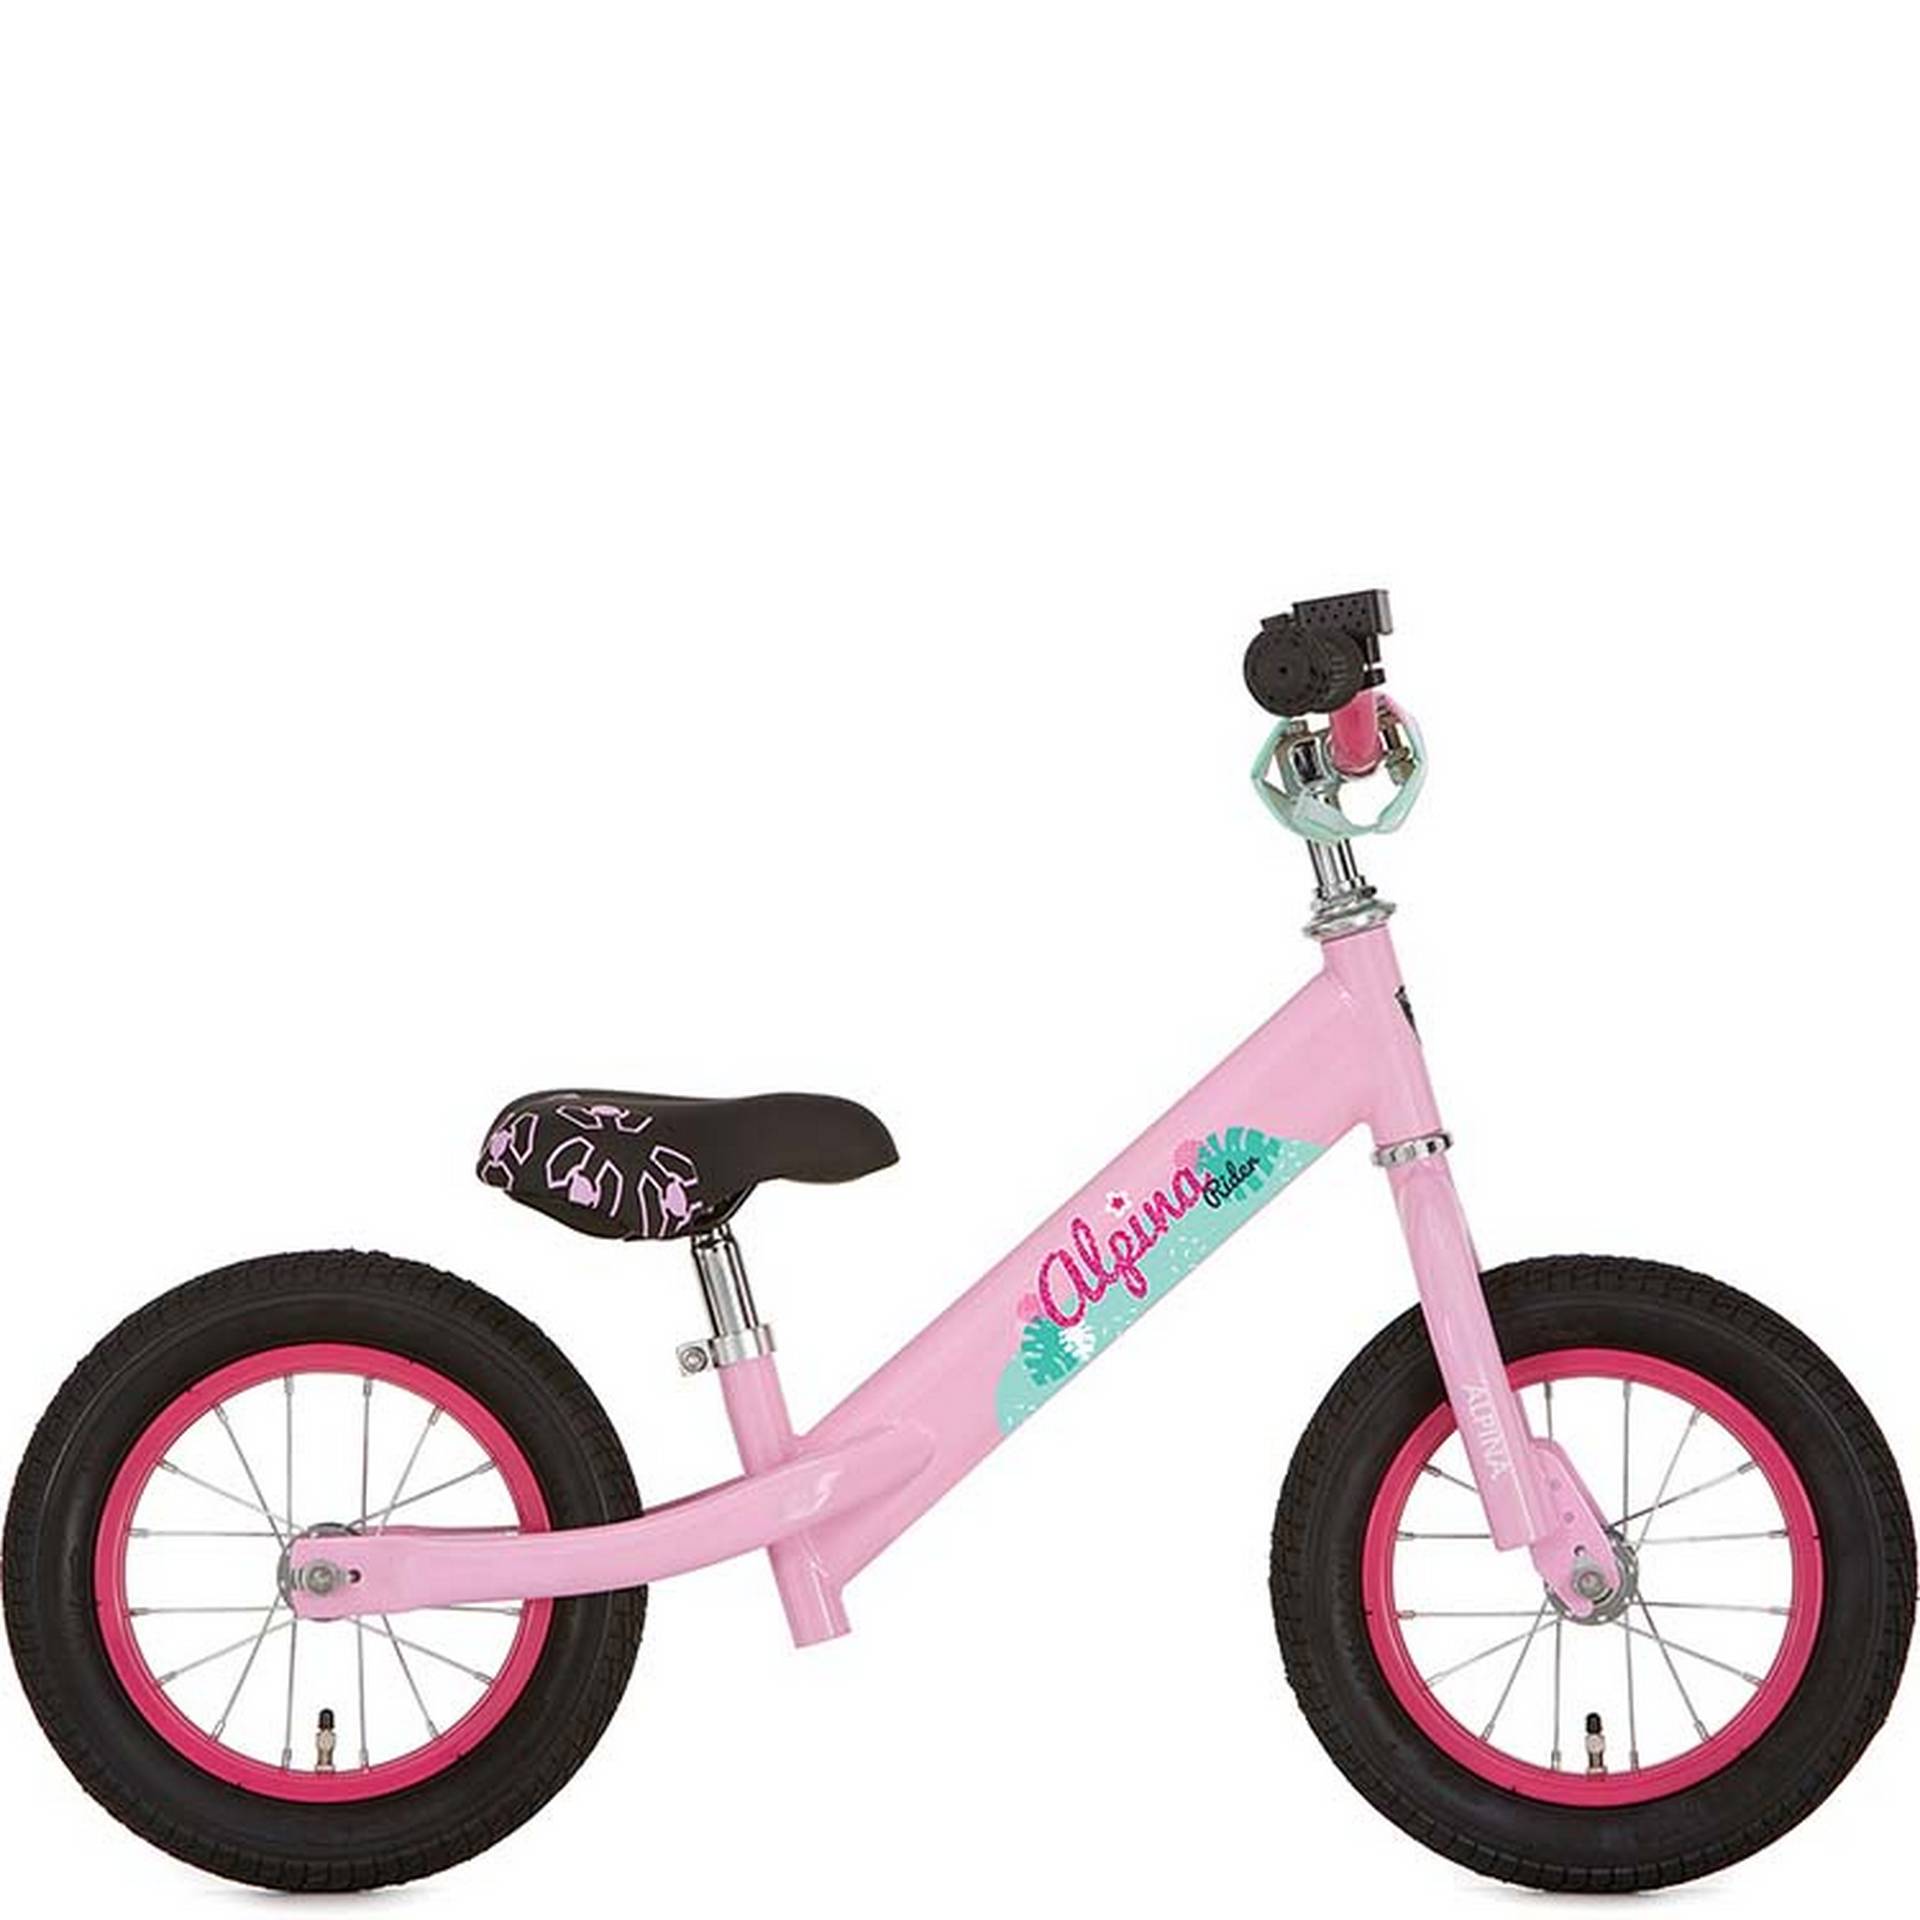 ALPINA Rider Blossom Pink 2019 - 1/1